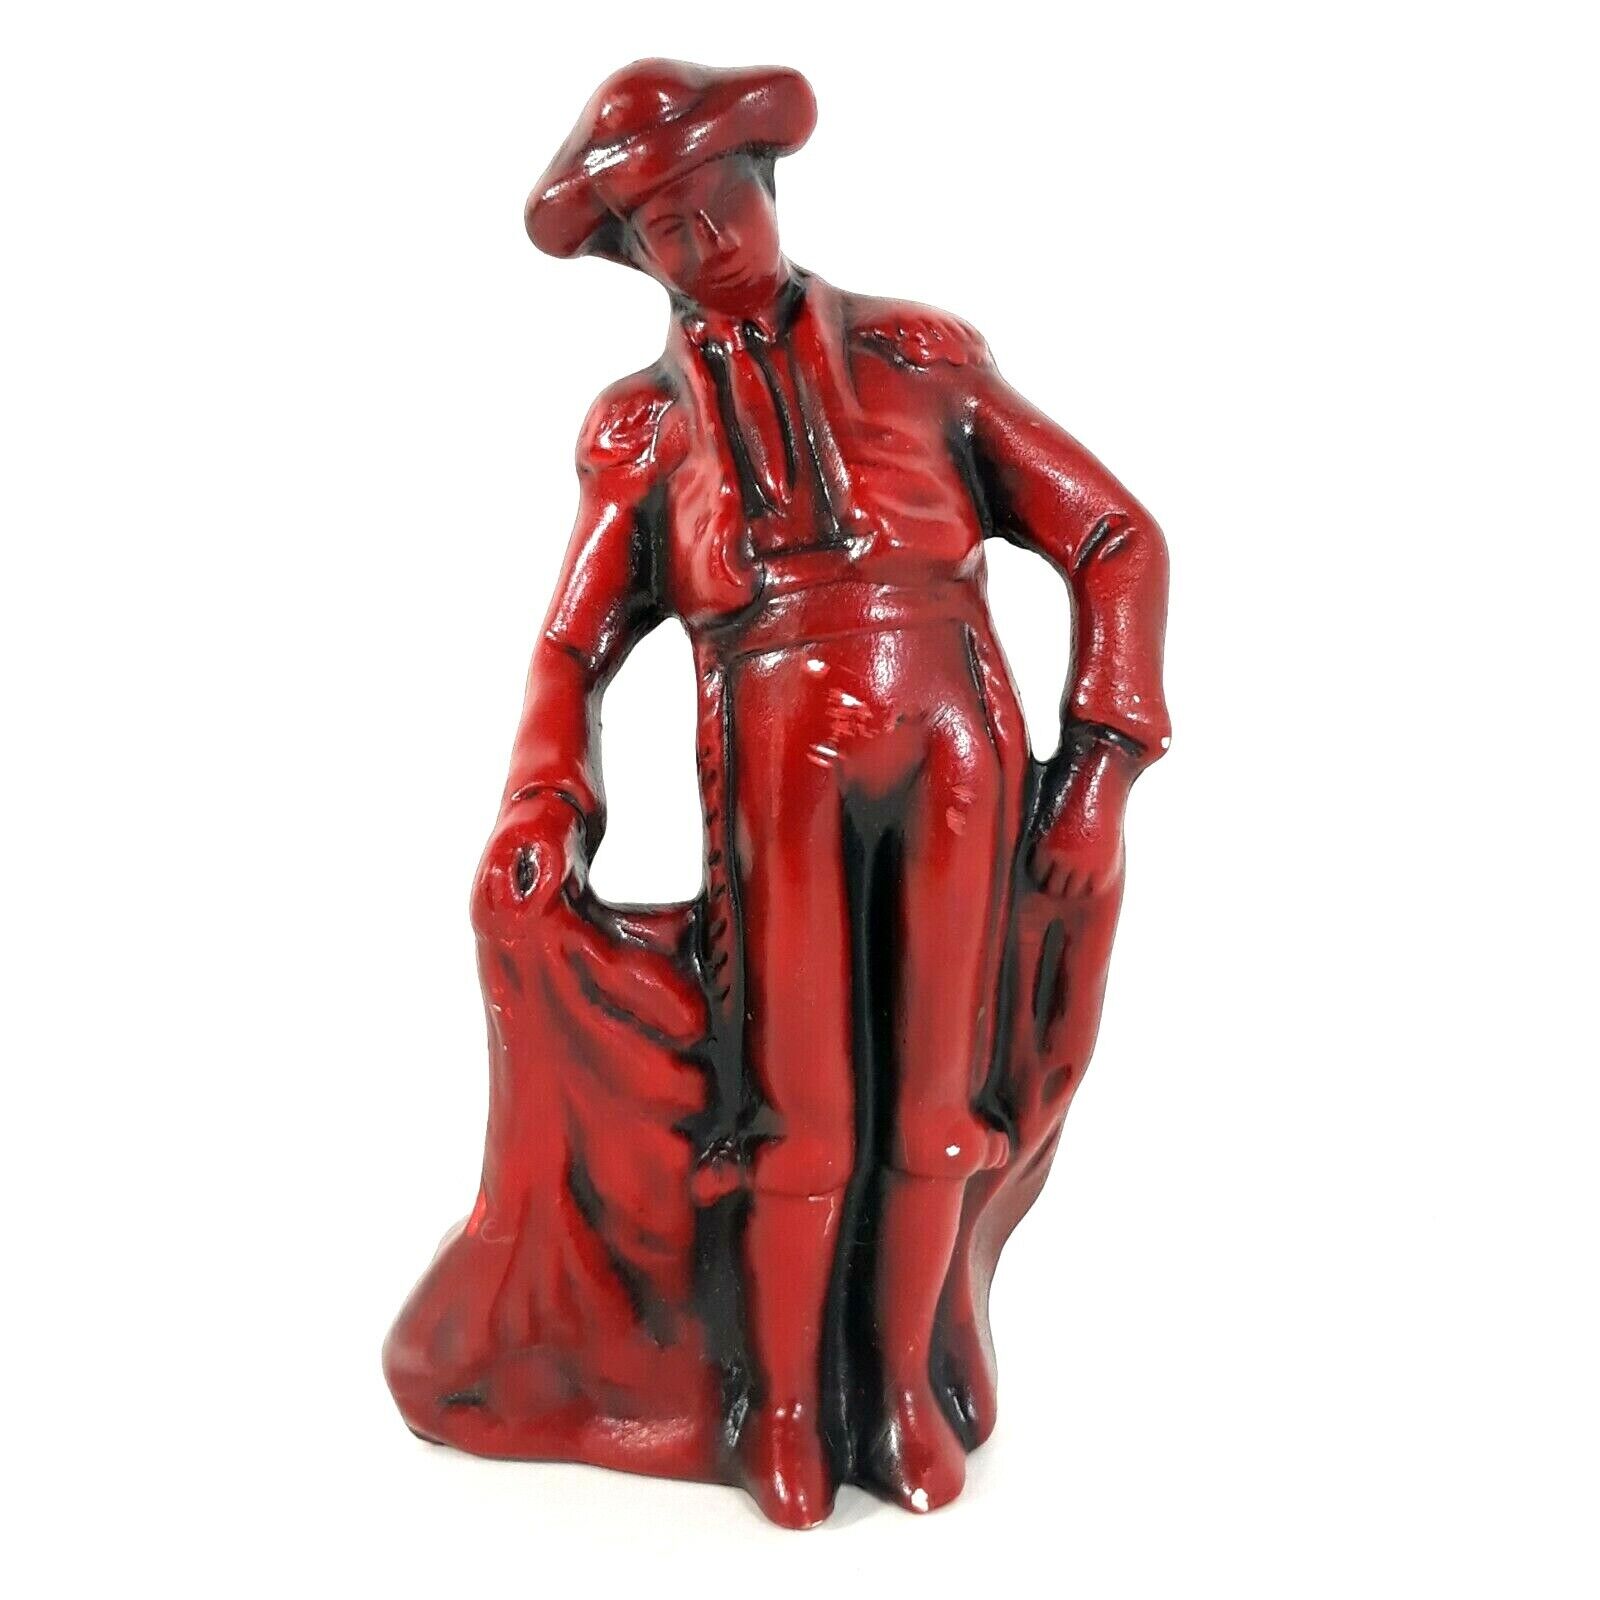 VTG Bullfighter Sculpture Spanish Matador Figurine Red Ceramic 6\